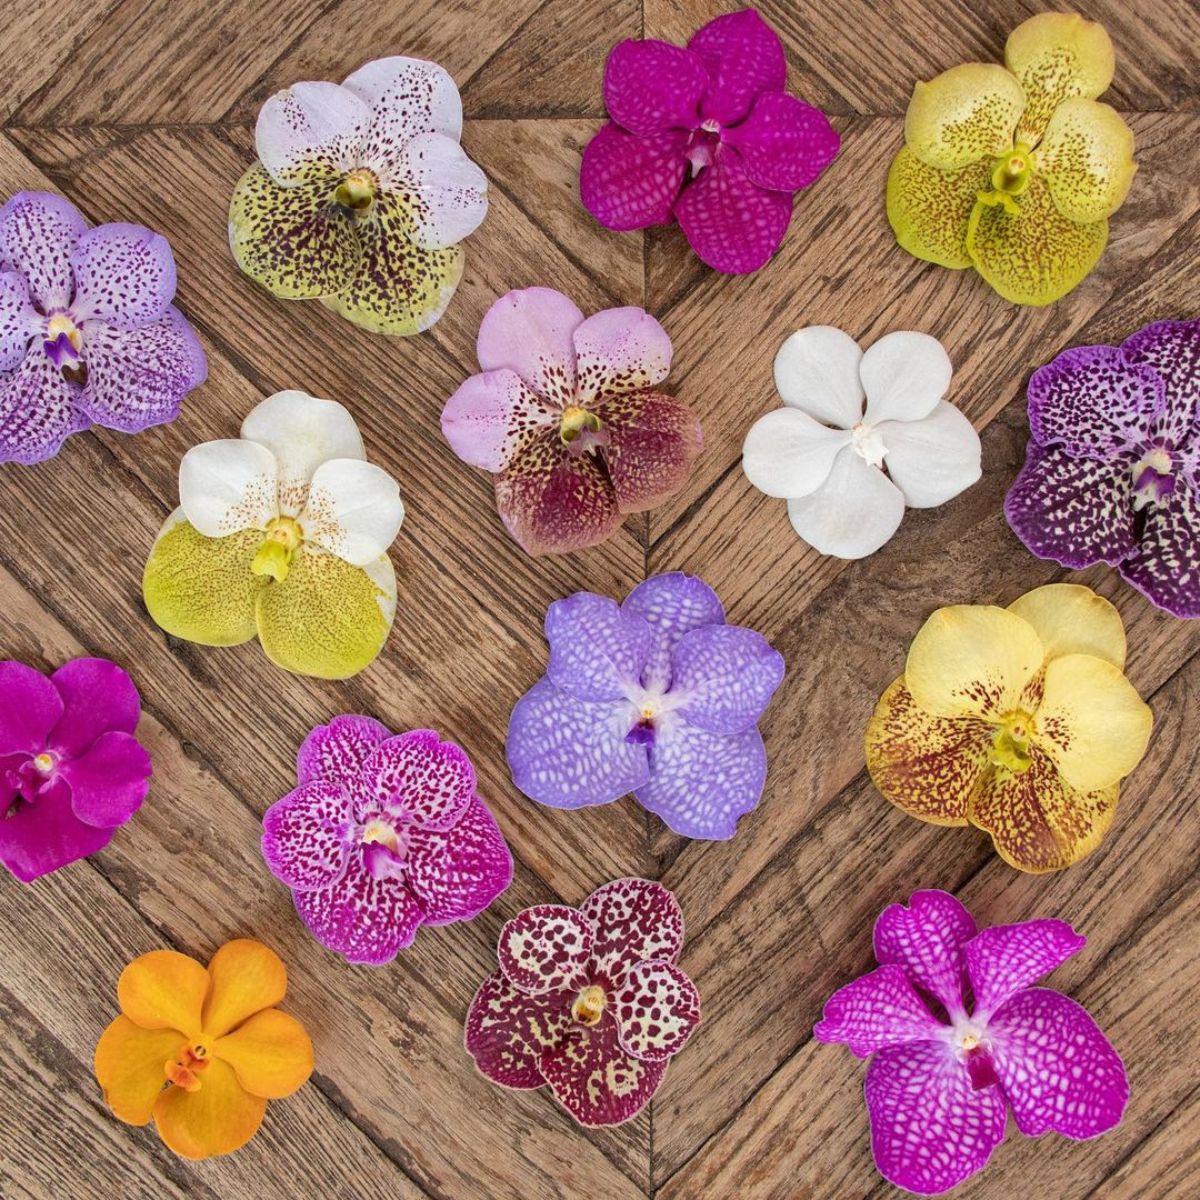 vanda-orchids-featured